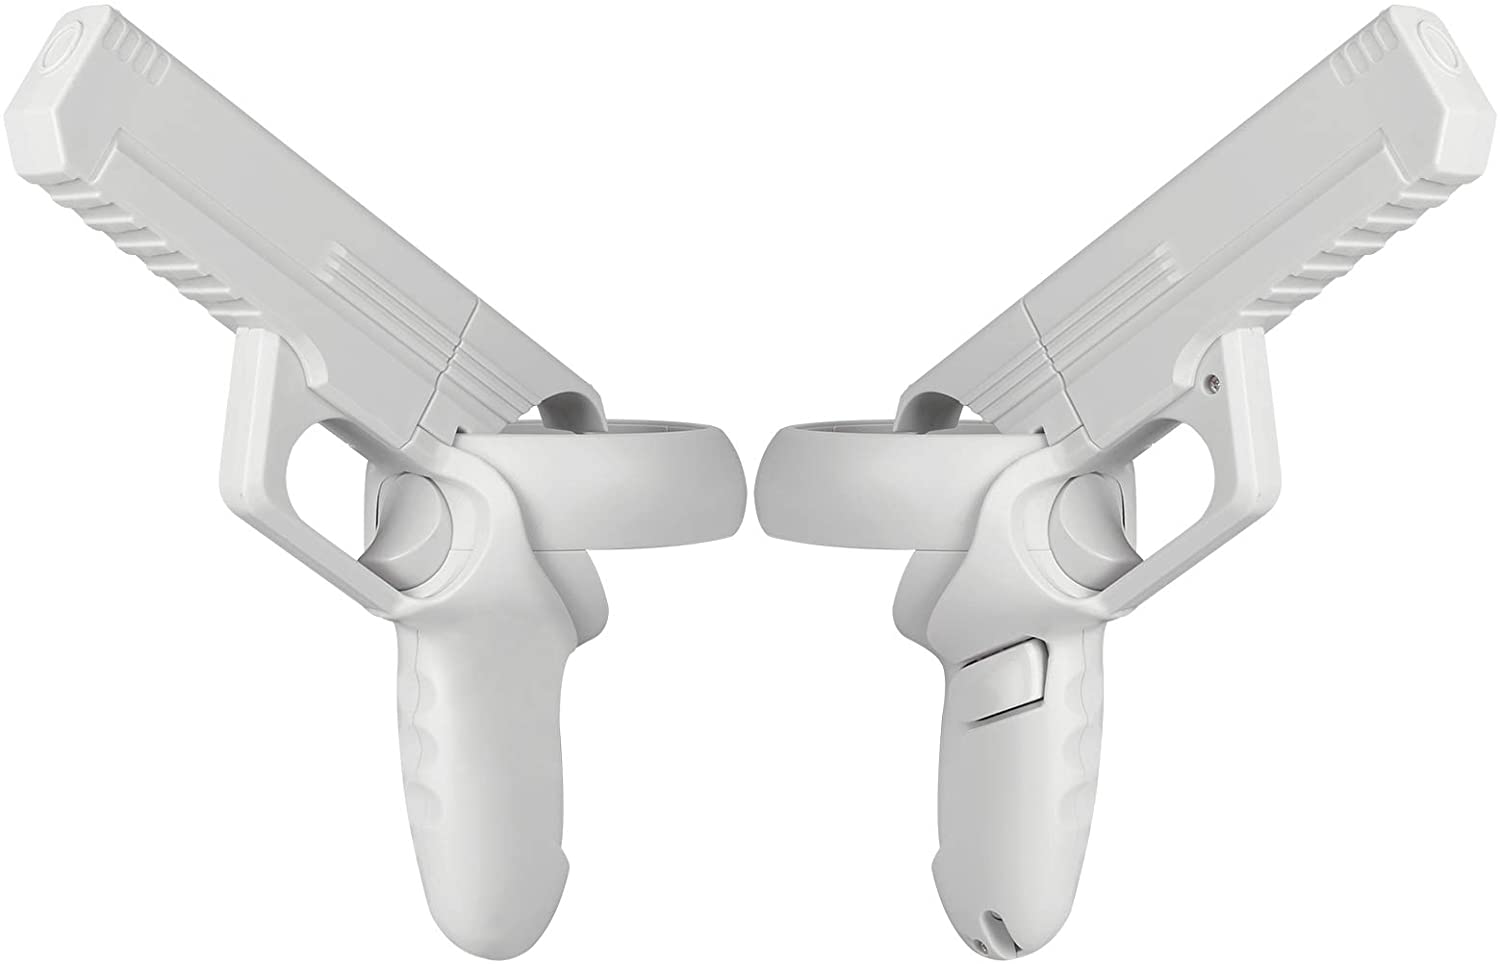 Esimen VR Game Gun for Meta Quest 2 Controllers Pistol Case